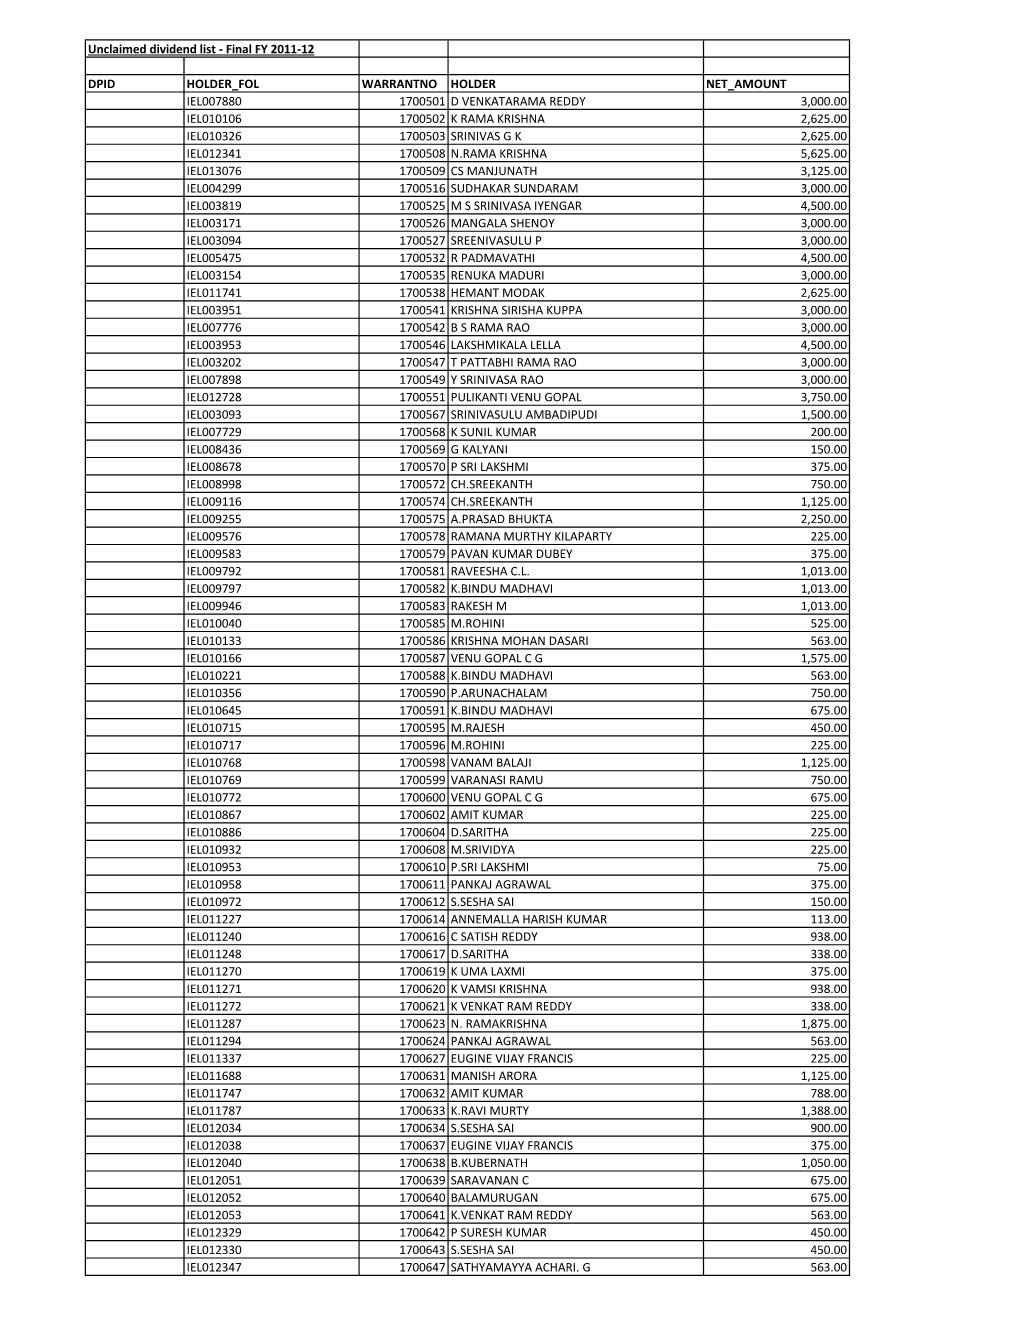 Unclaimed Dividend List - Final FY 2011-12